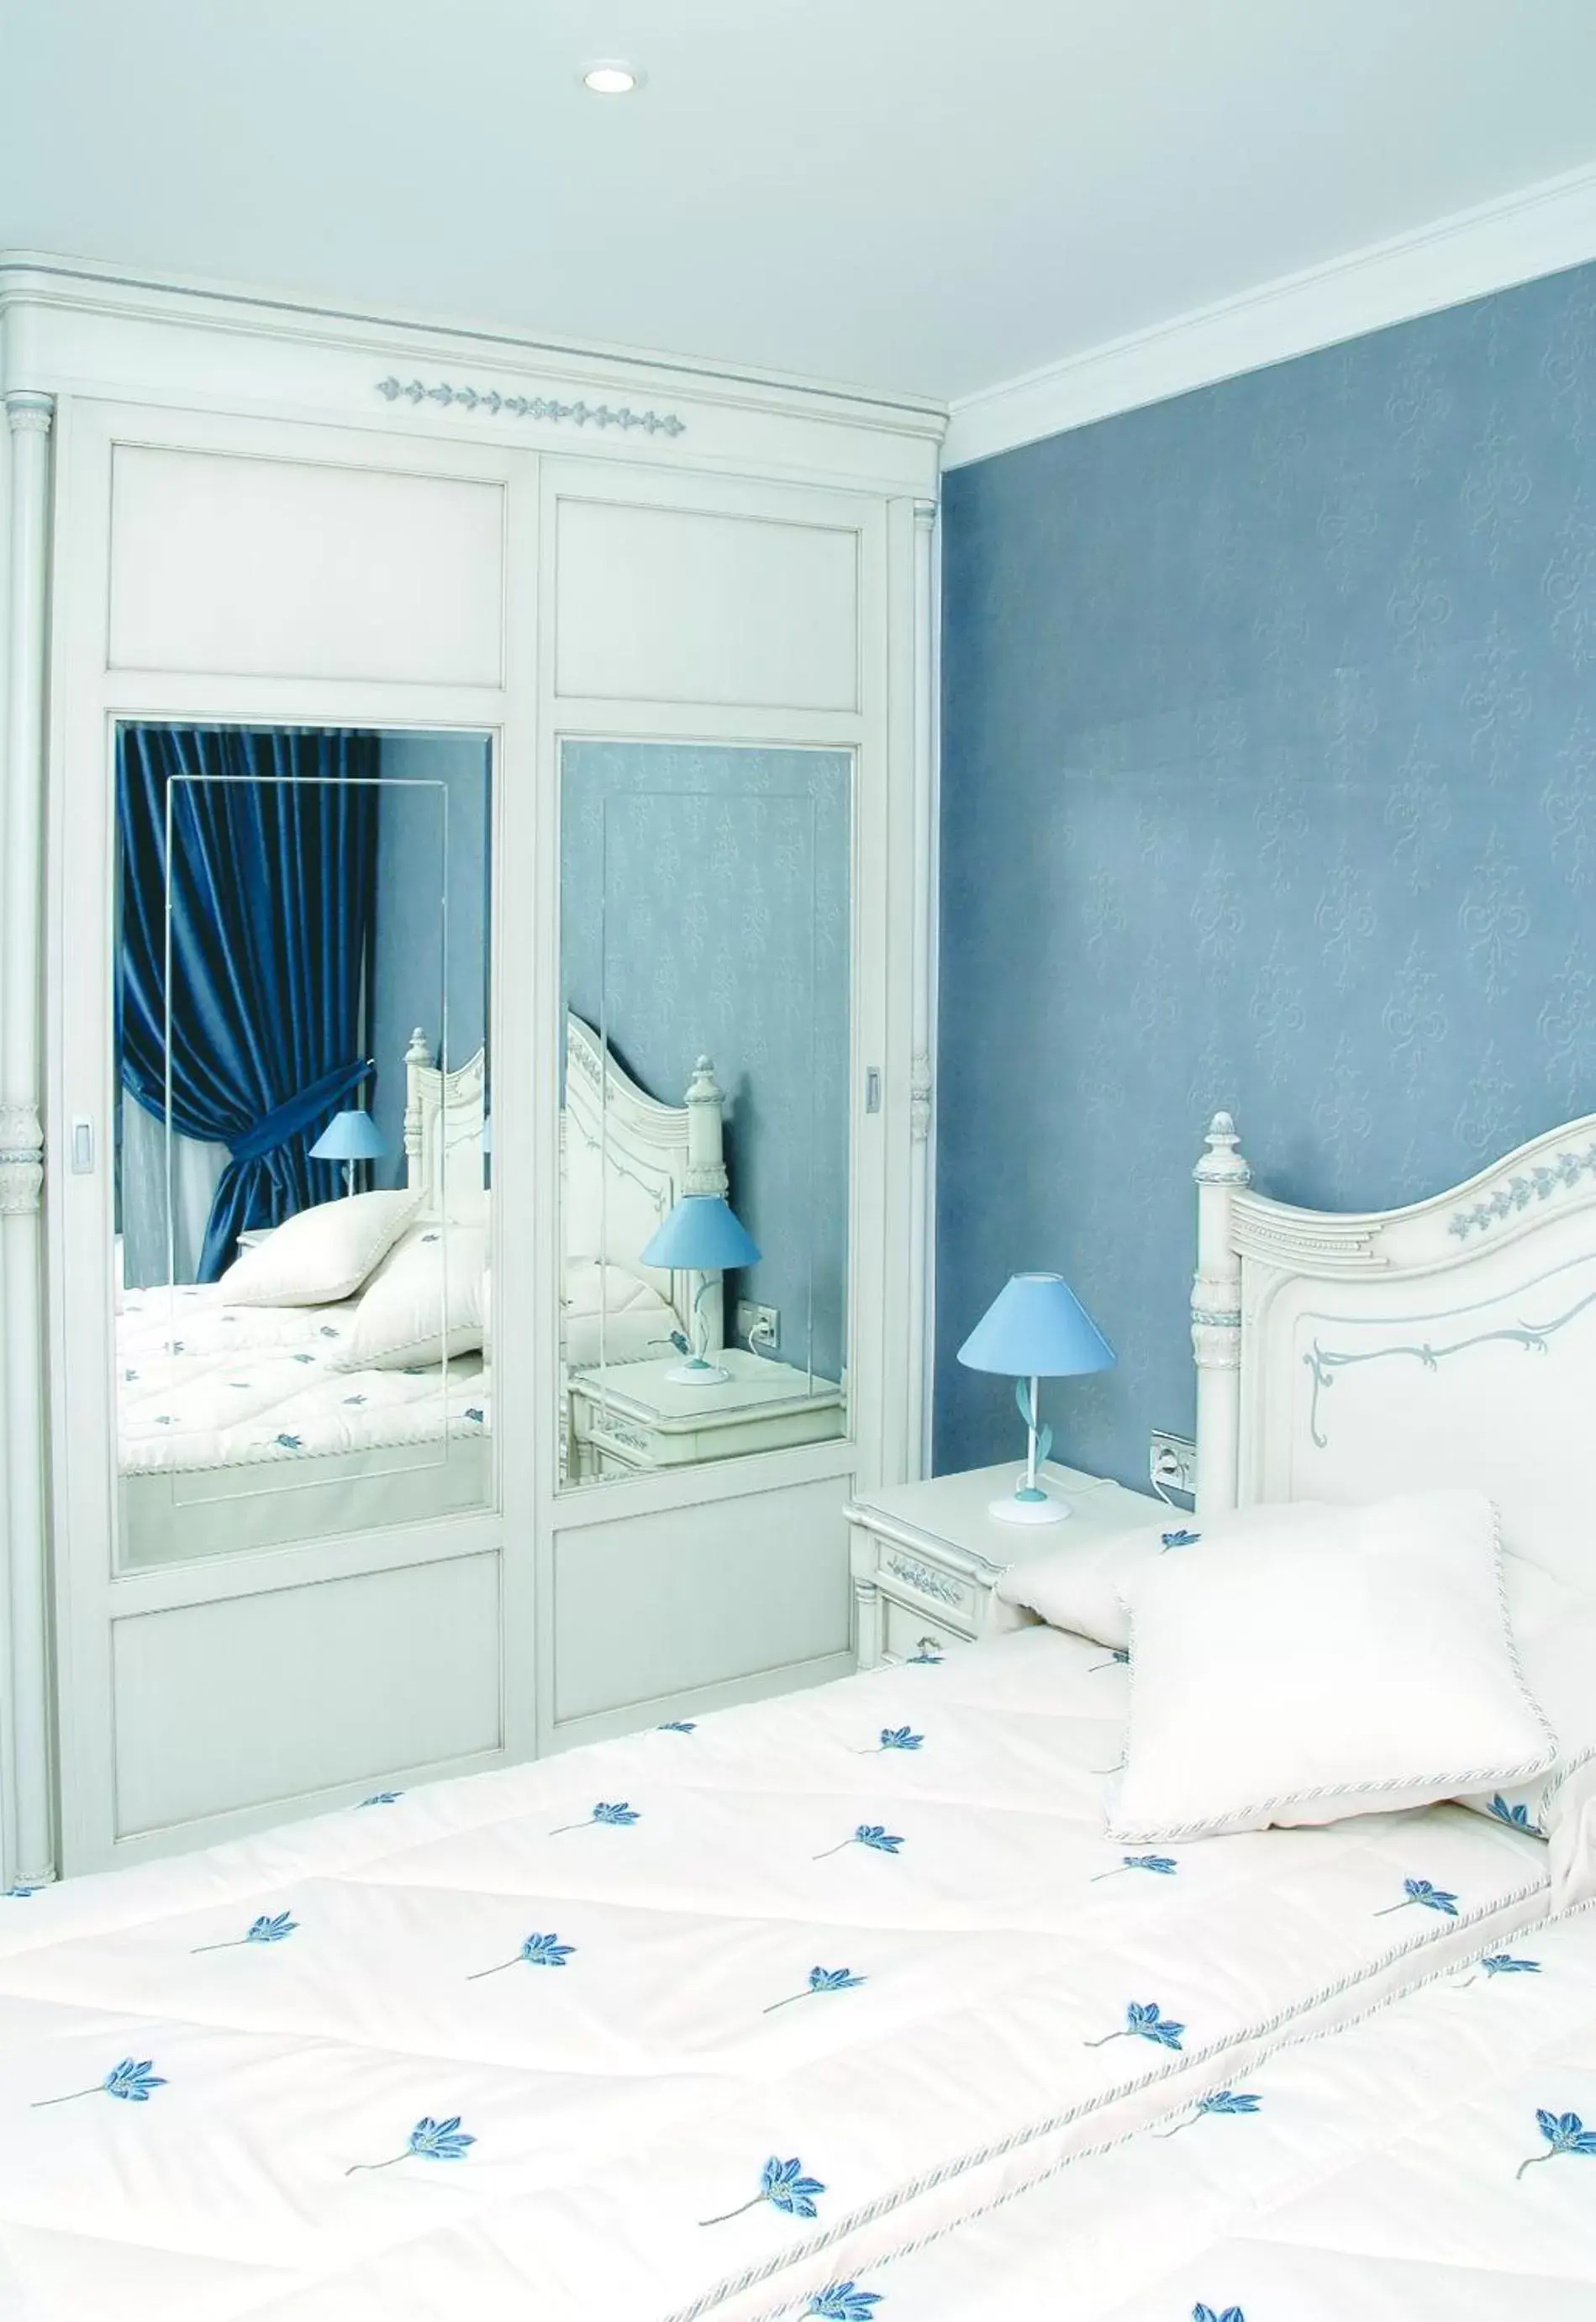 Bedroom, Bed in Masd Mediterraneo Hotel Apartamentos Spa